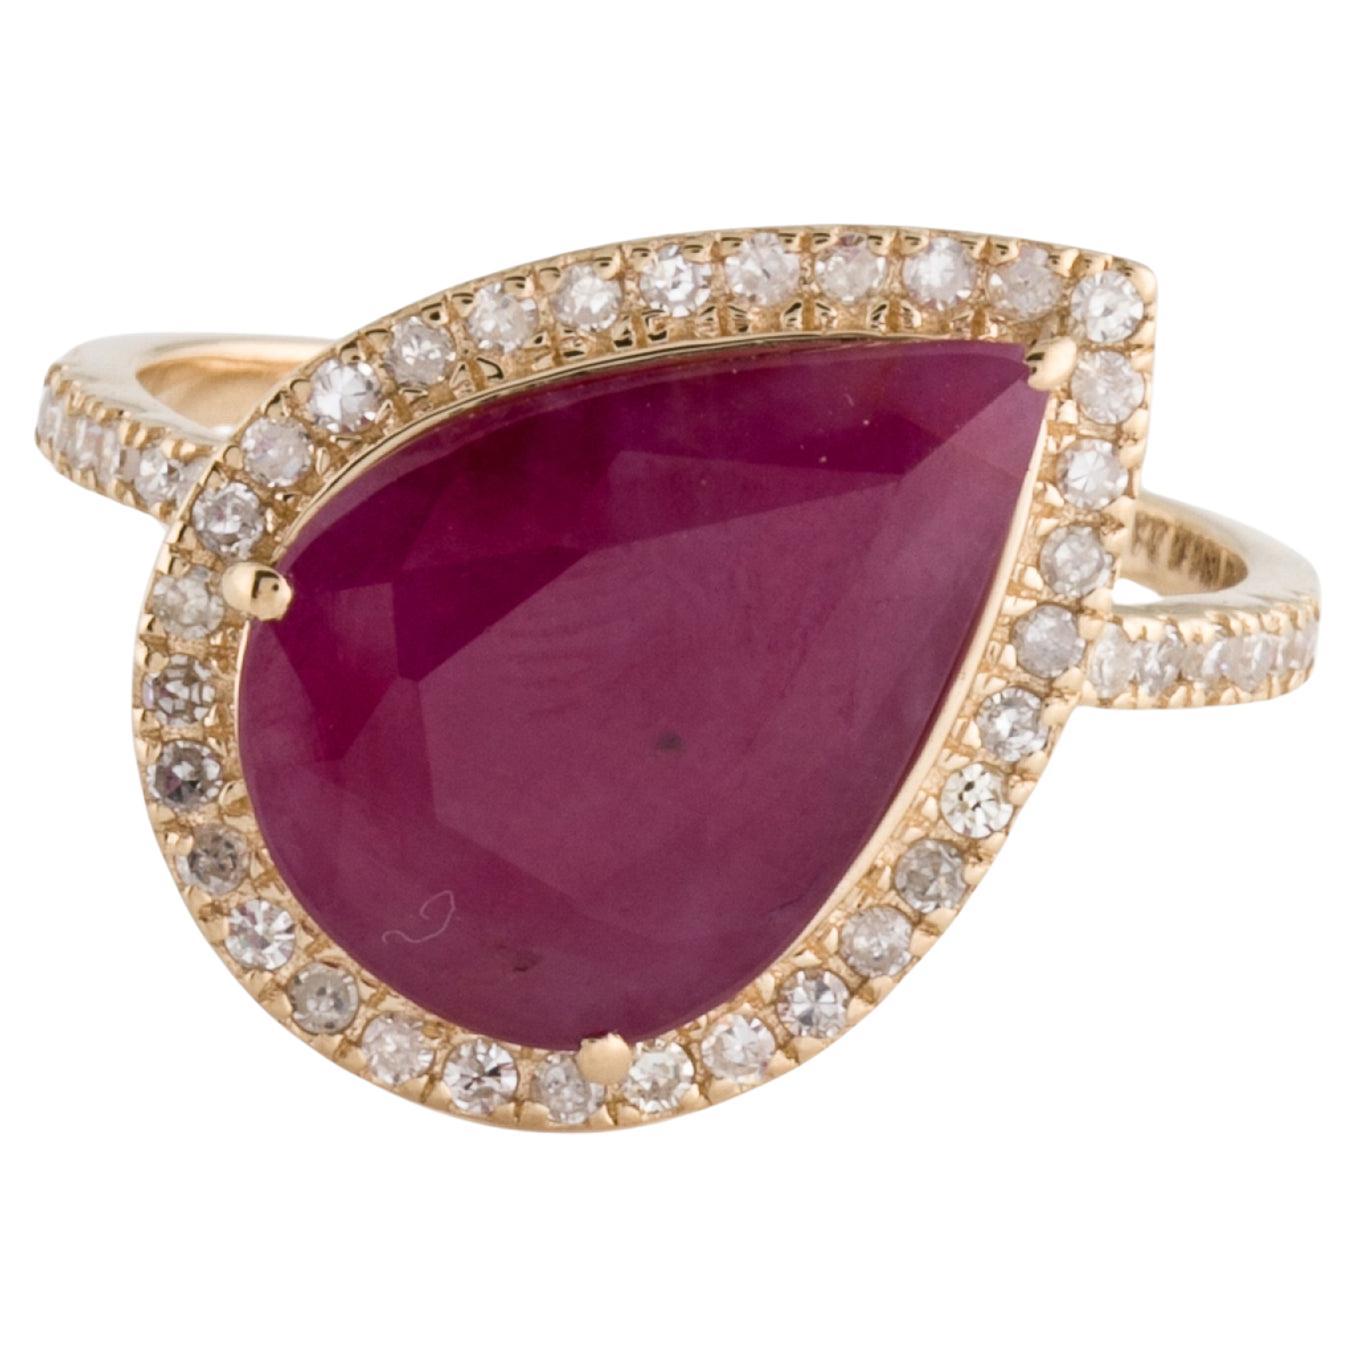 Luxuriöser 14K Rubin & Diamant Cocktail-Ring 5,17ctw - Größe 8 - Statement-Schmuck